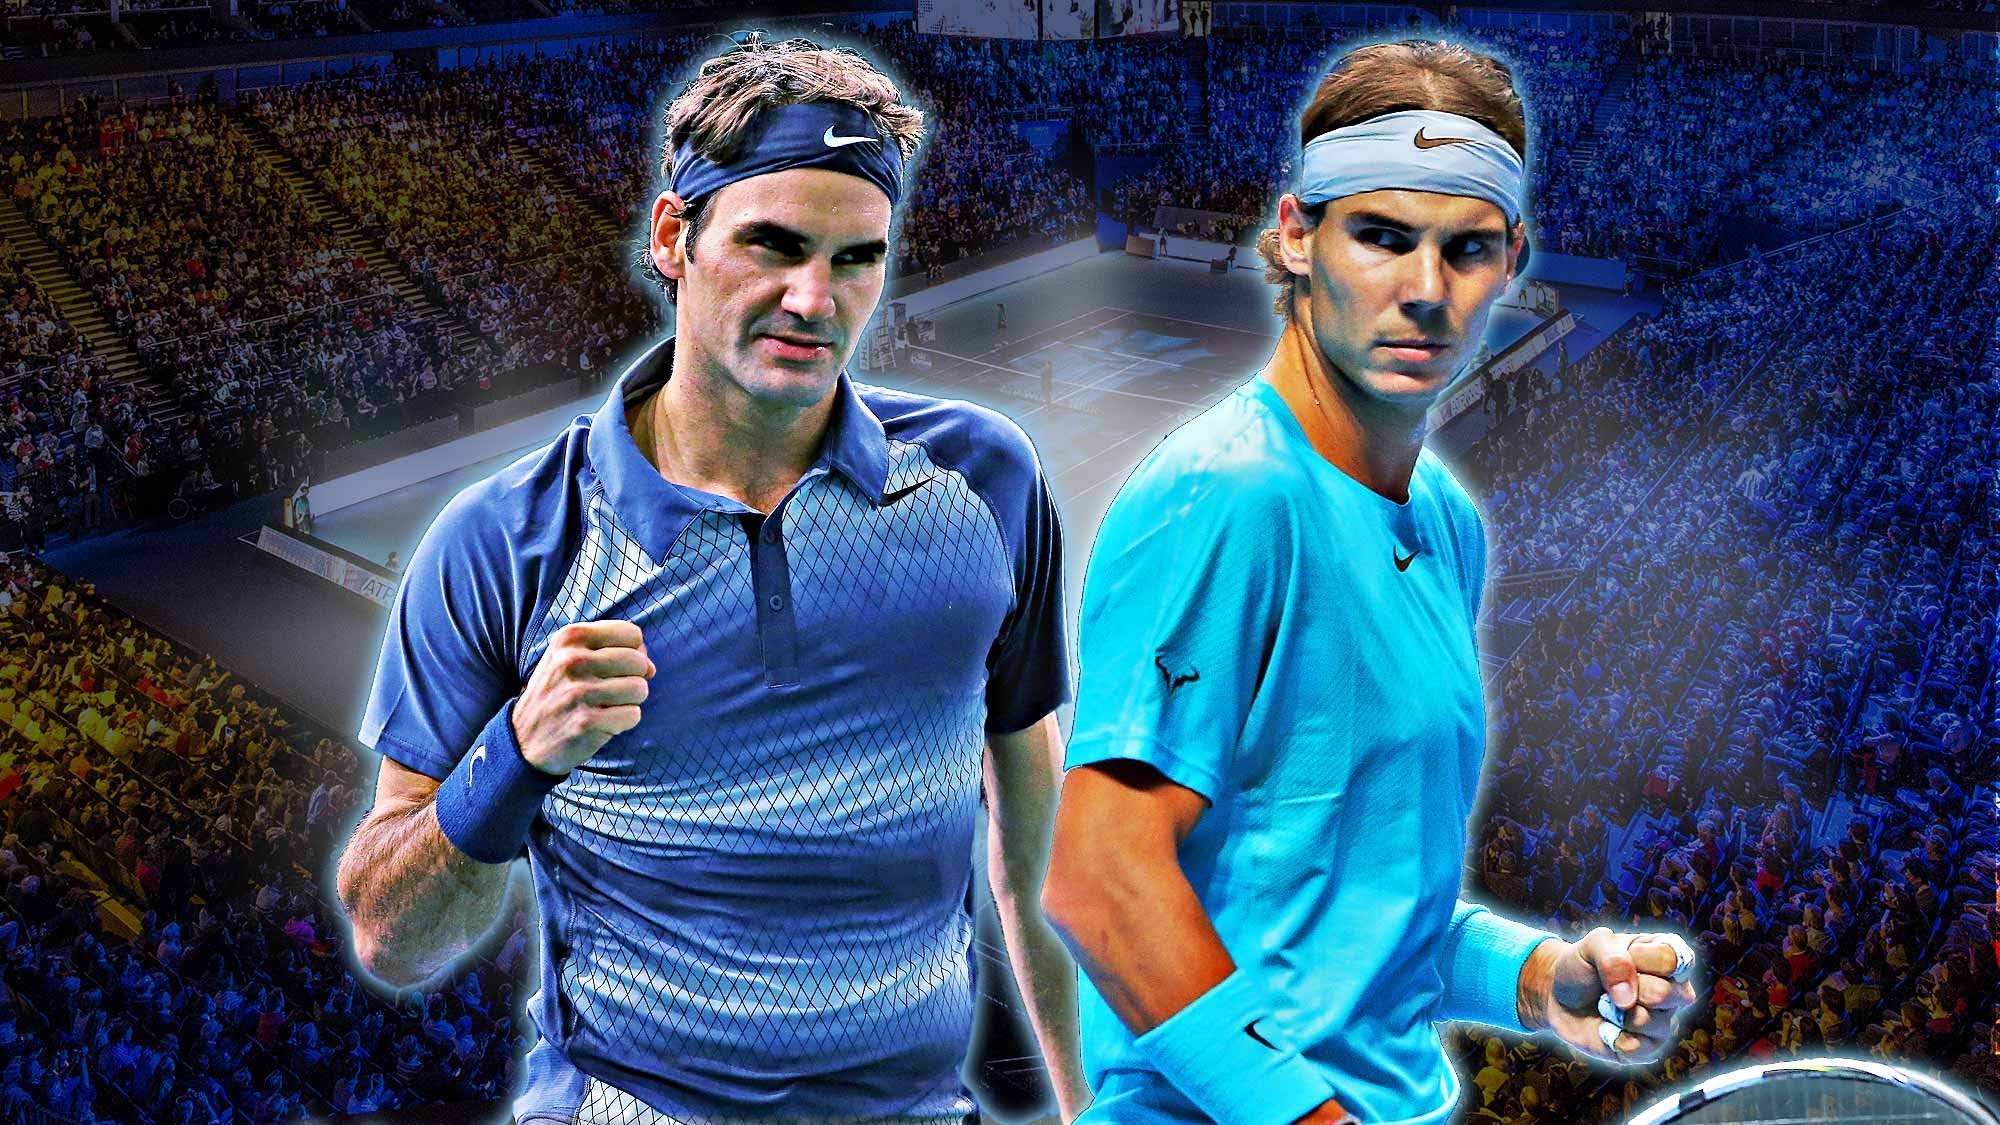 Federer vs Nadal Wimbledon 2019